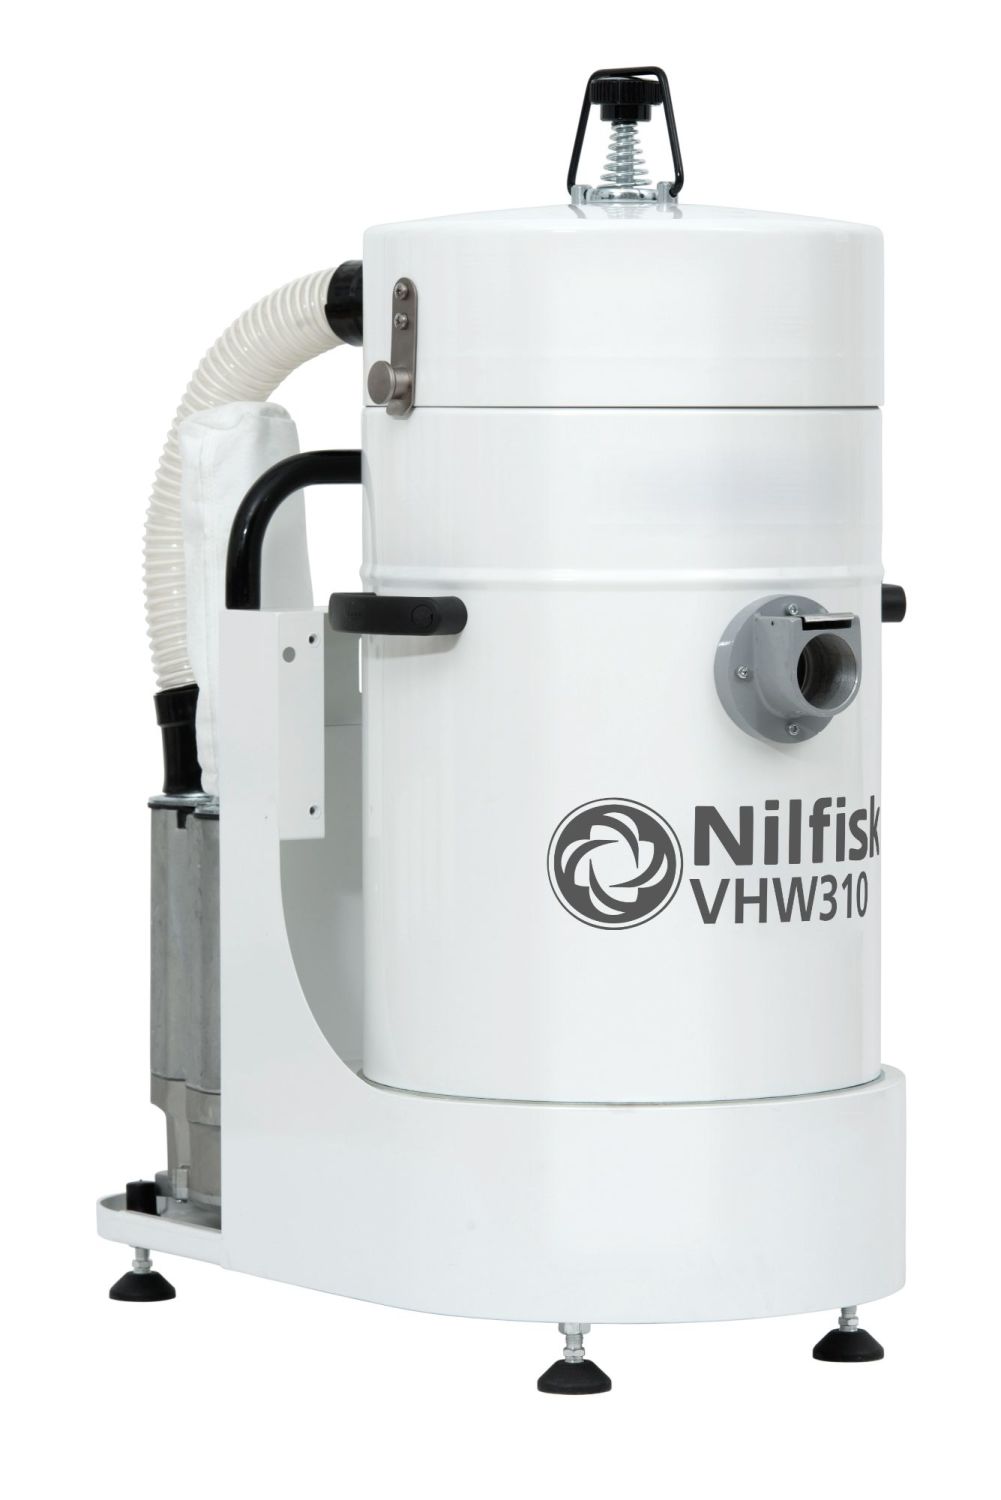 Nilfisk VHW310 Industrial Vacuum